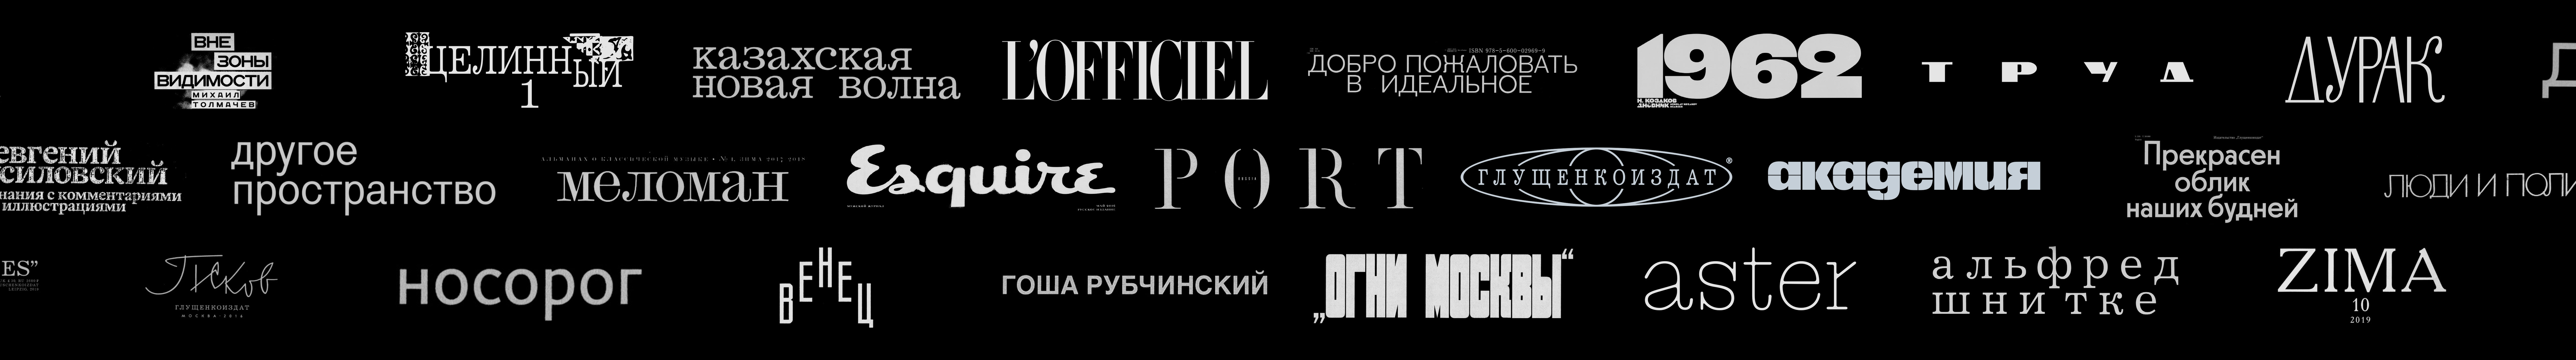 Kirill Gluschenko's profile banner